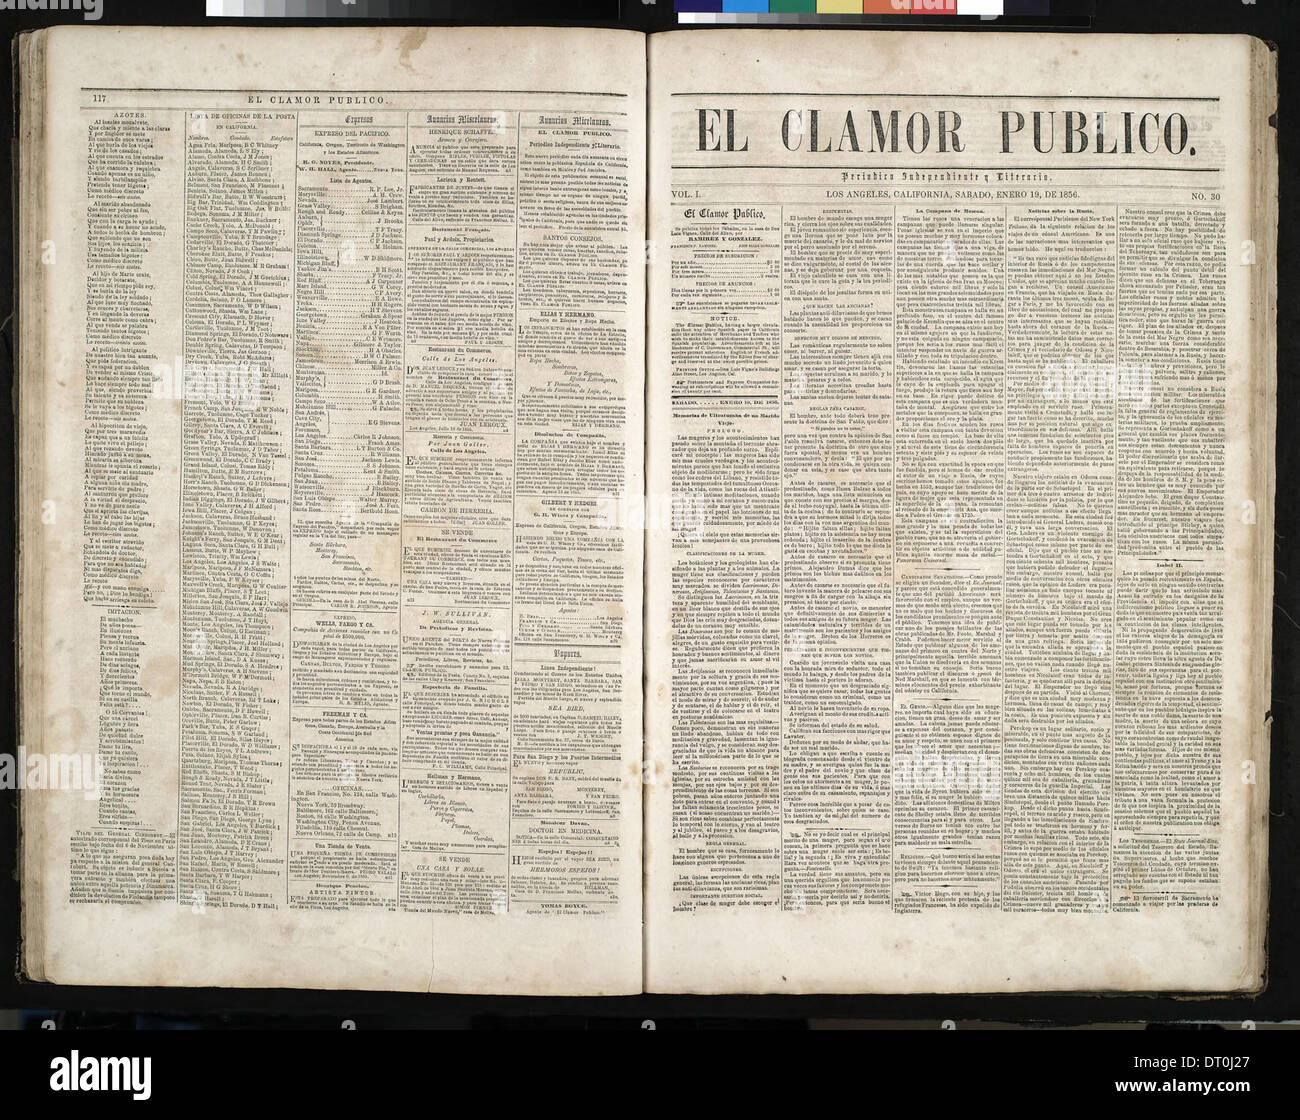 El Clamor Publico, vol. I, no. 29, Enero 12 de 1856 (ECLAM-185 Stock Photo